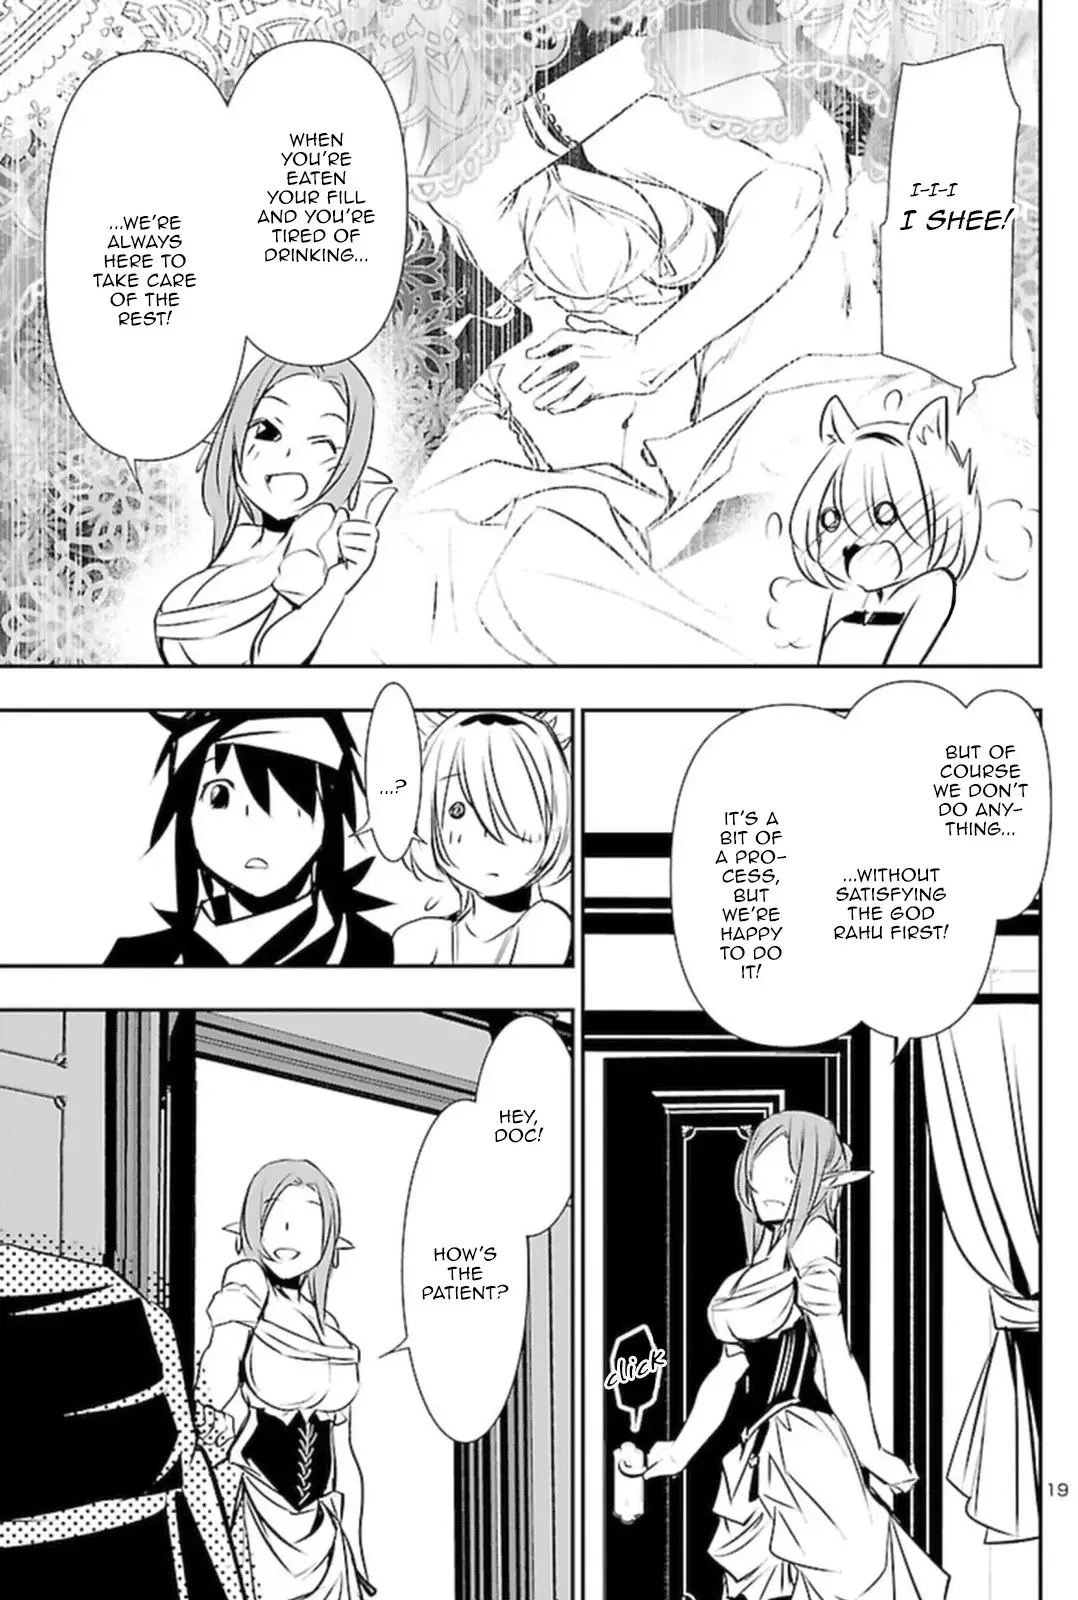 Shinju no Nectar - 53 page 19